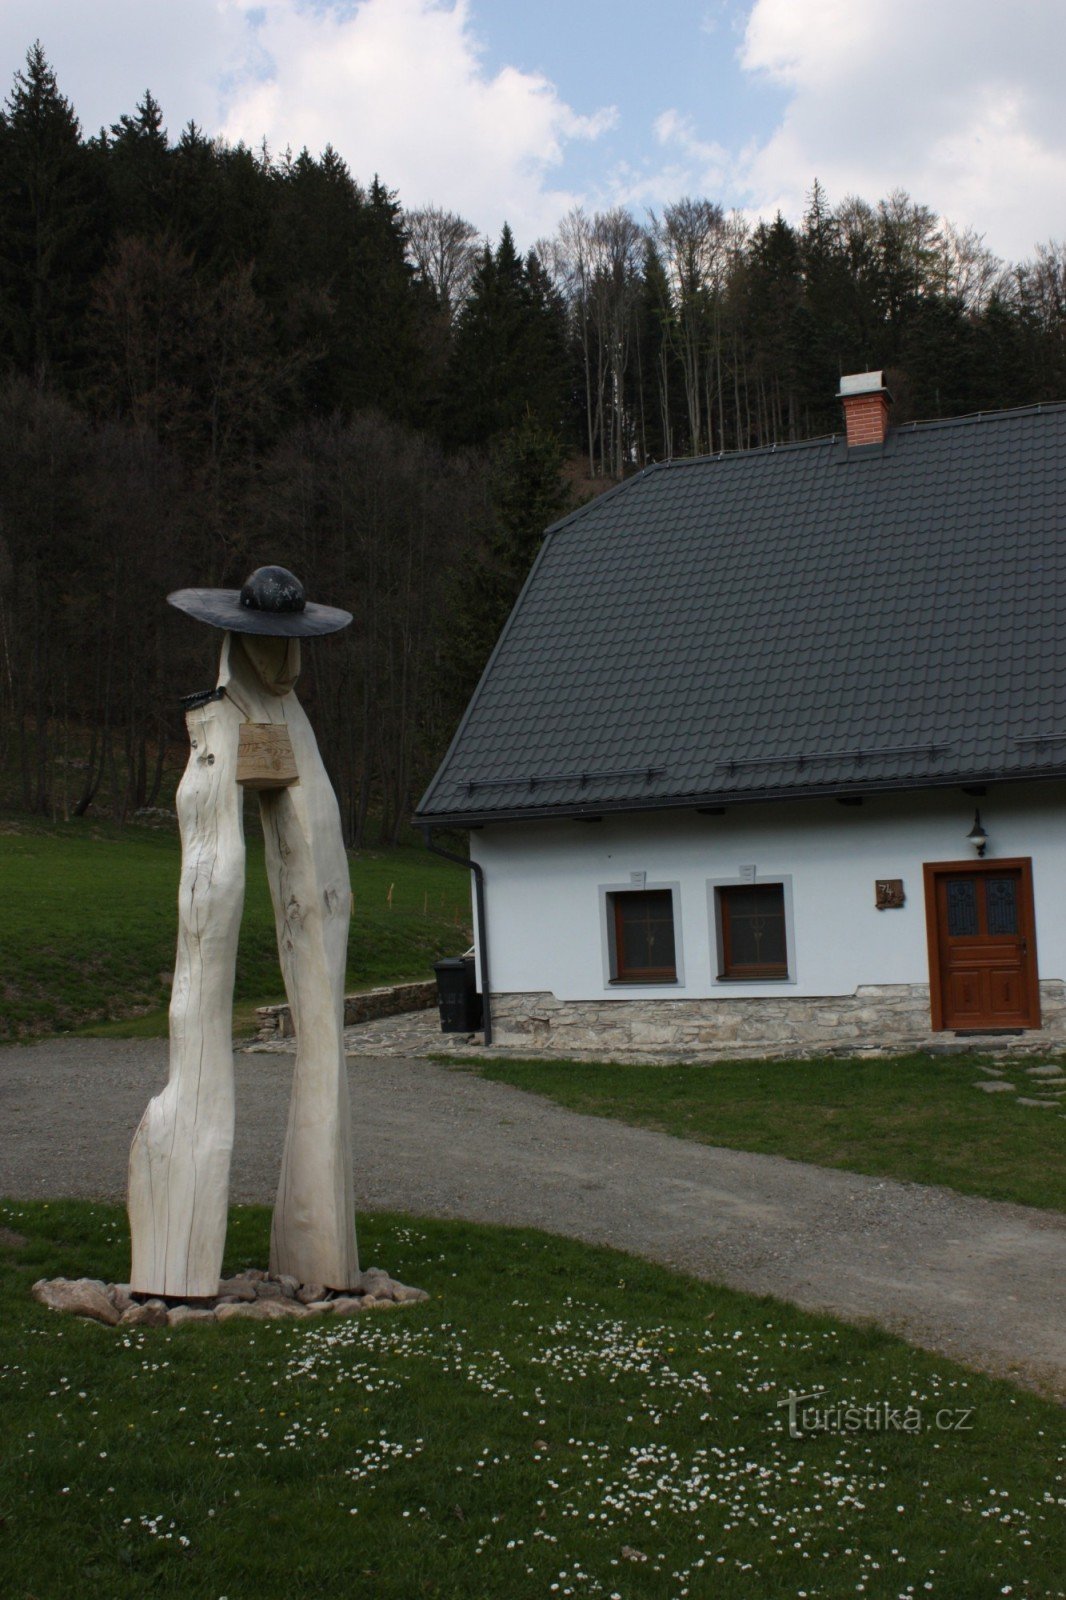 Sommerhus Pod Sviní horou i landsbyen Vláská ved foden af ​​Kralické Sněžník-massivet